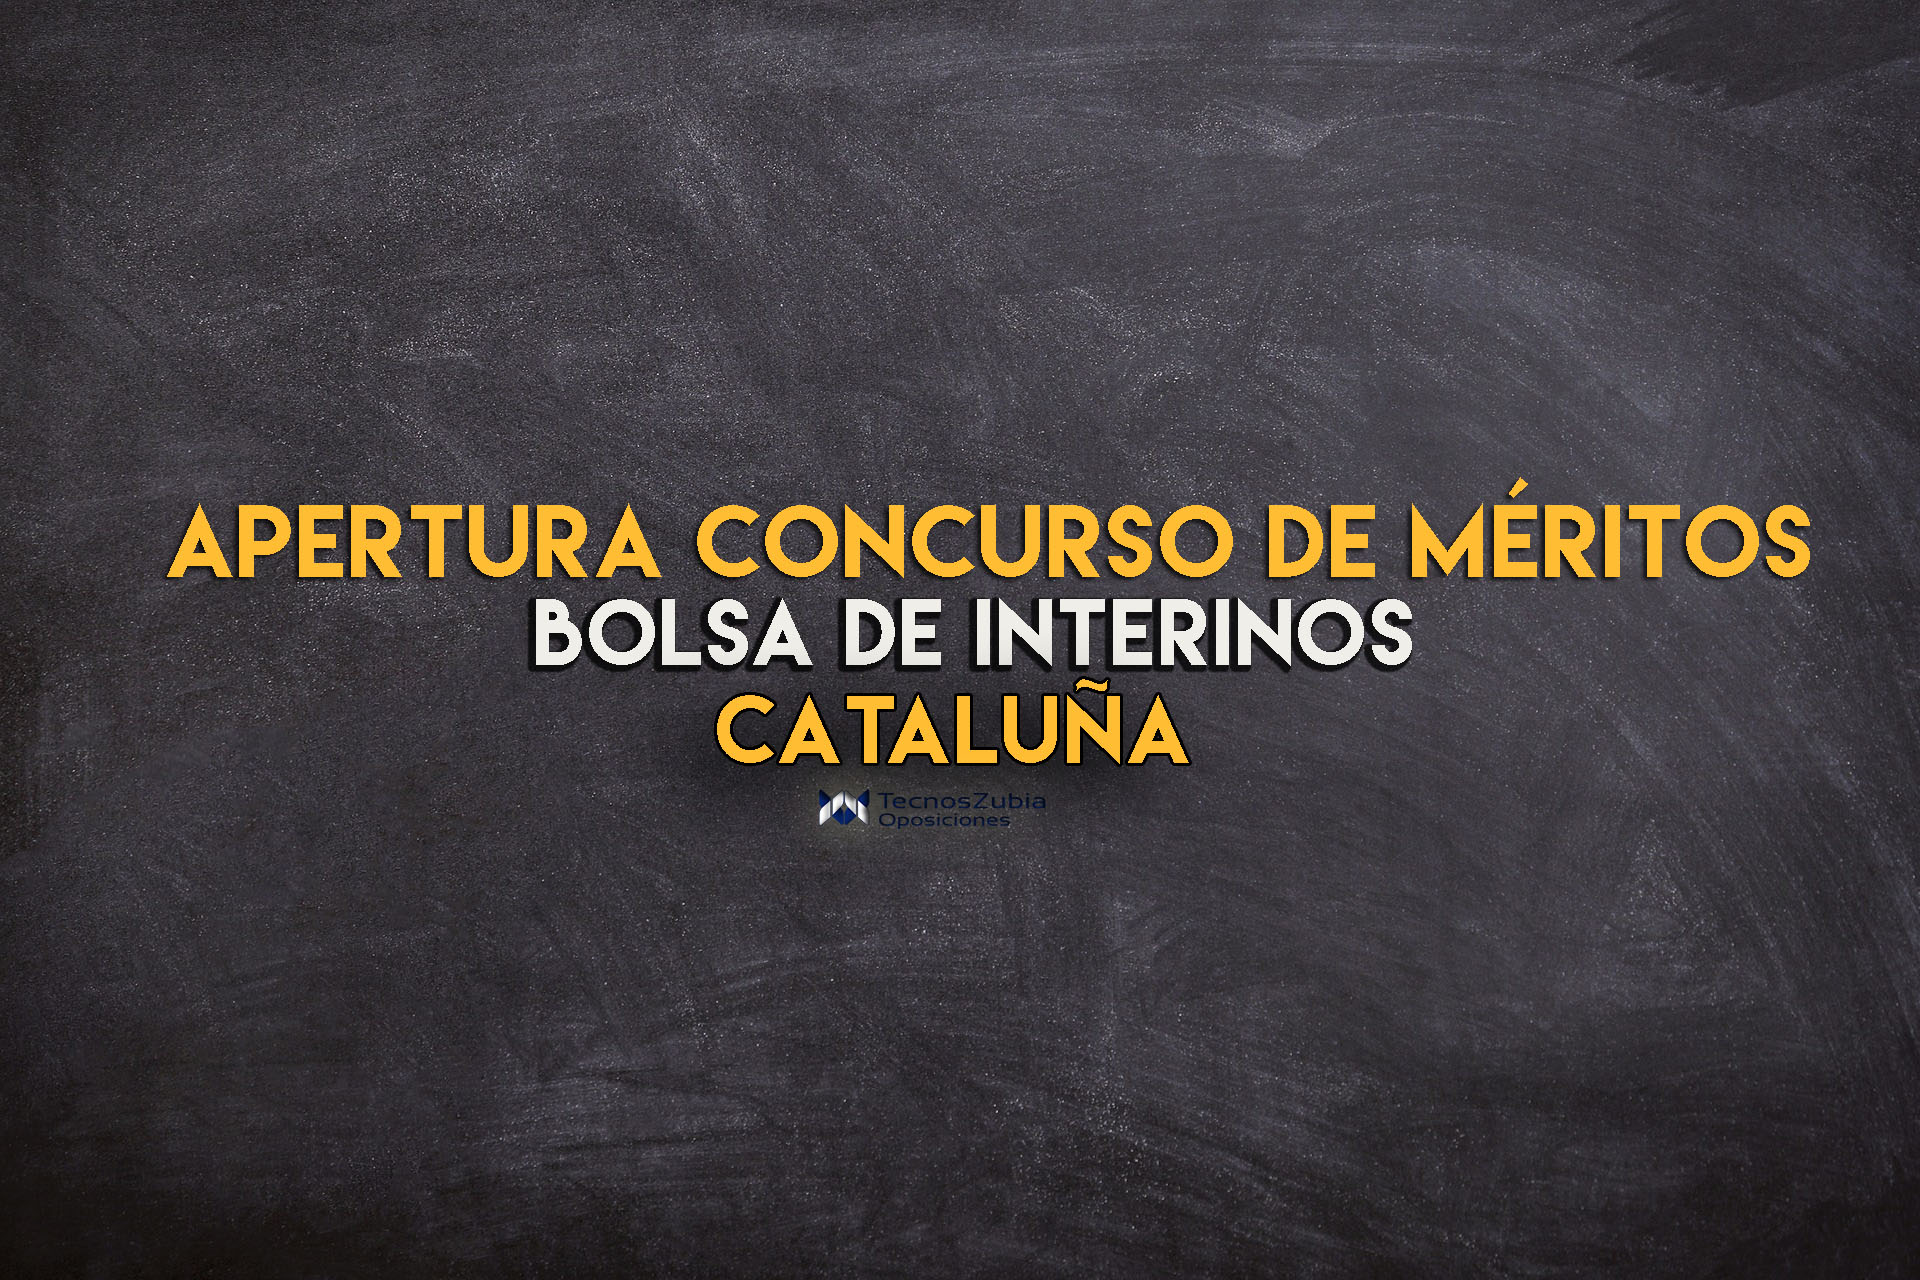 apertura concurso méritos cataluña